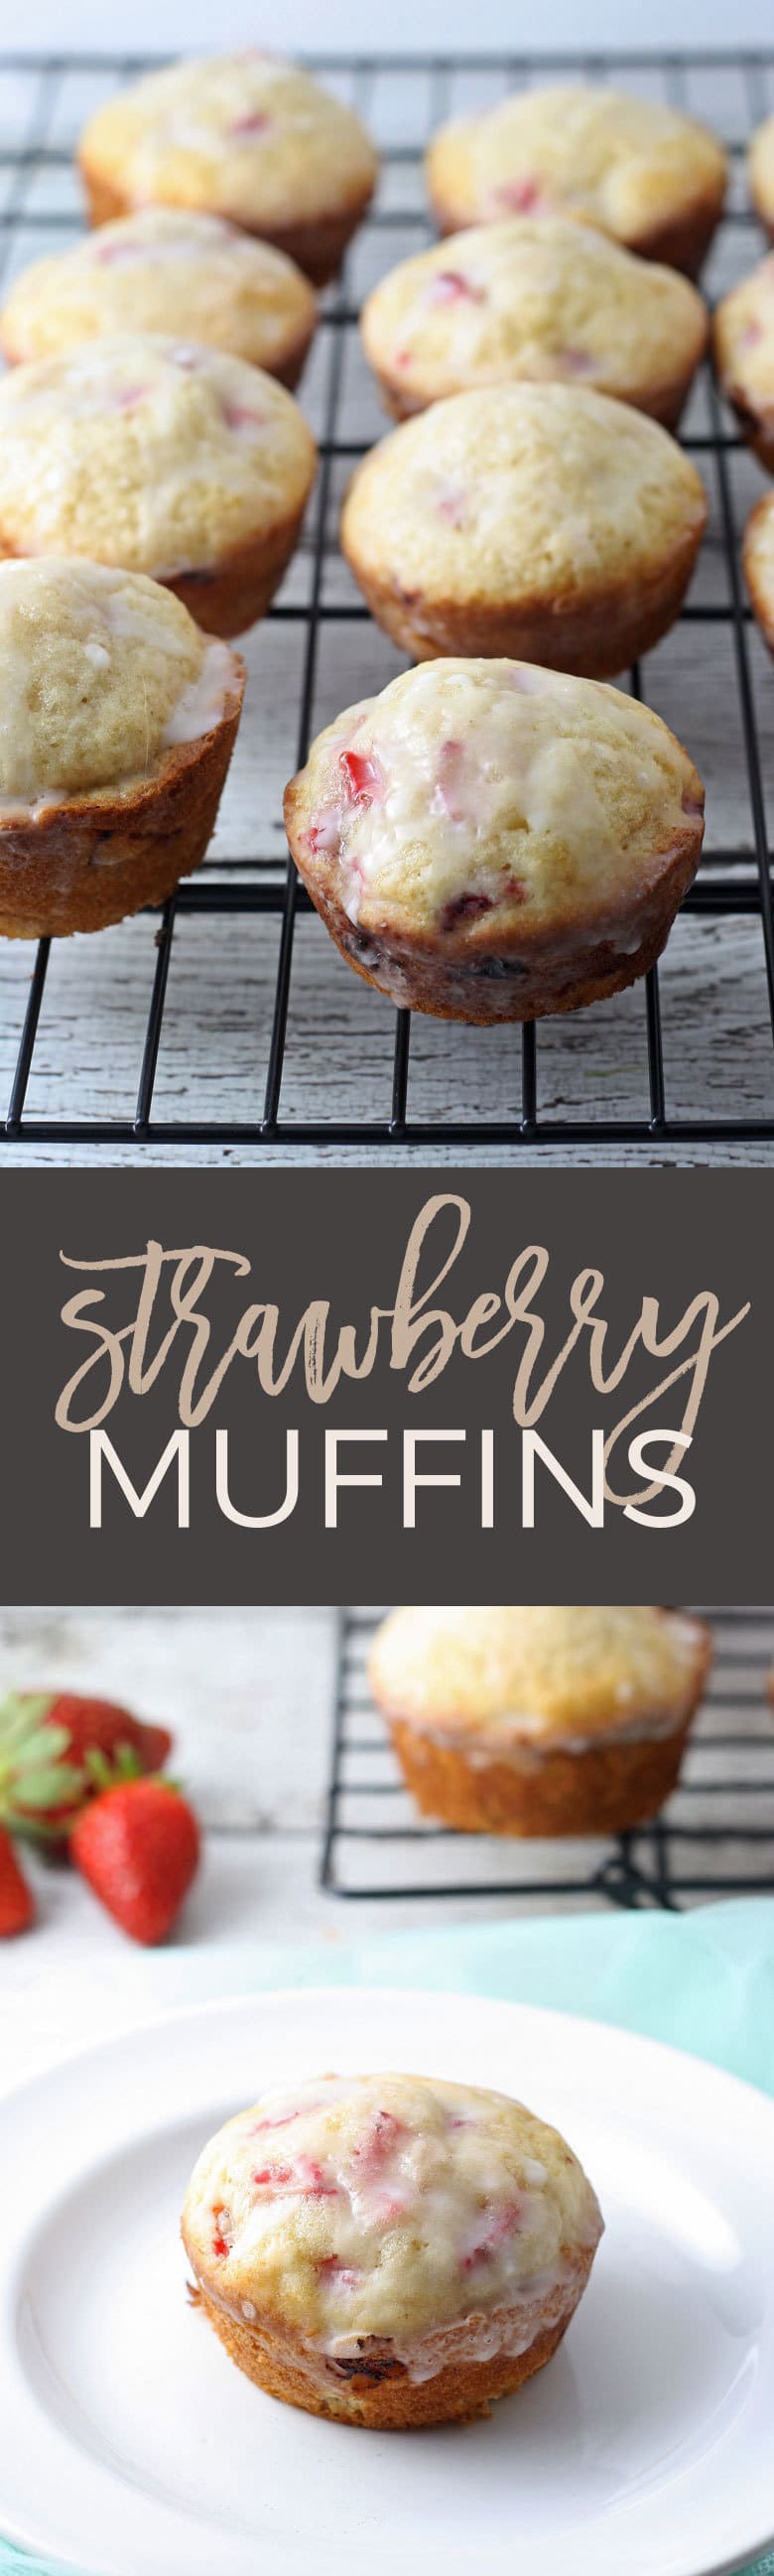 strawberry muffin long pin